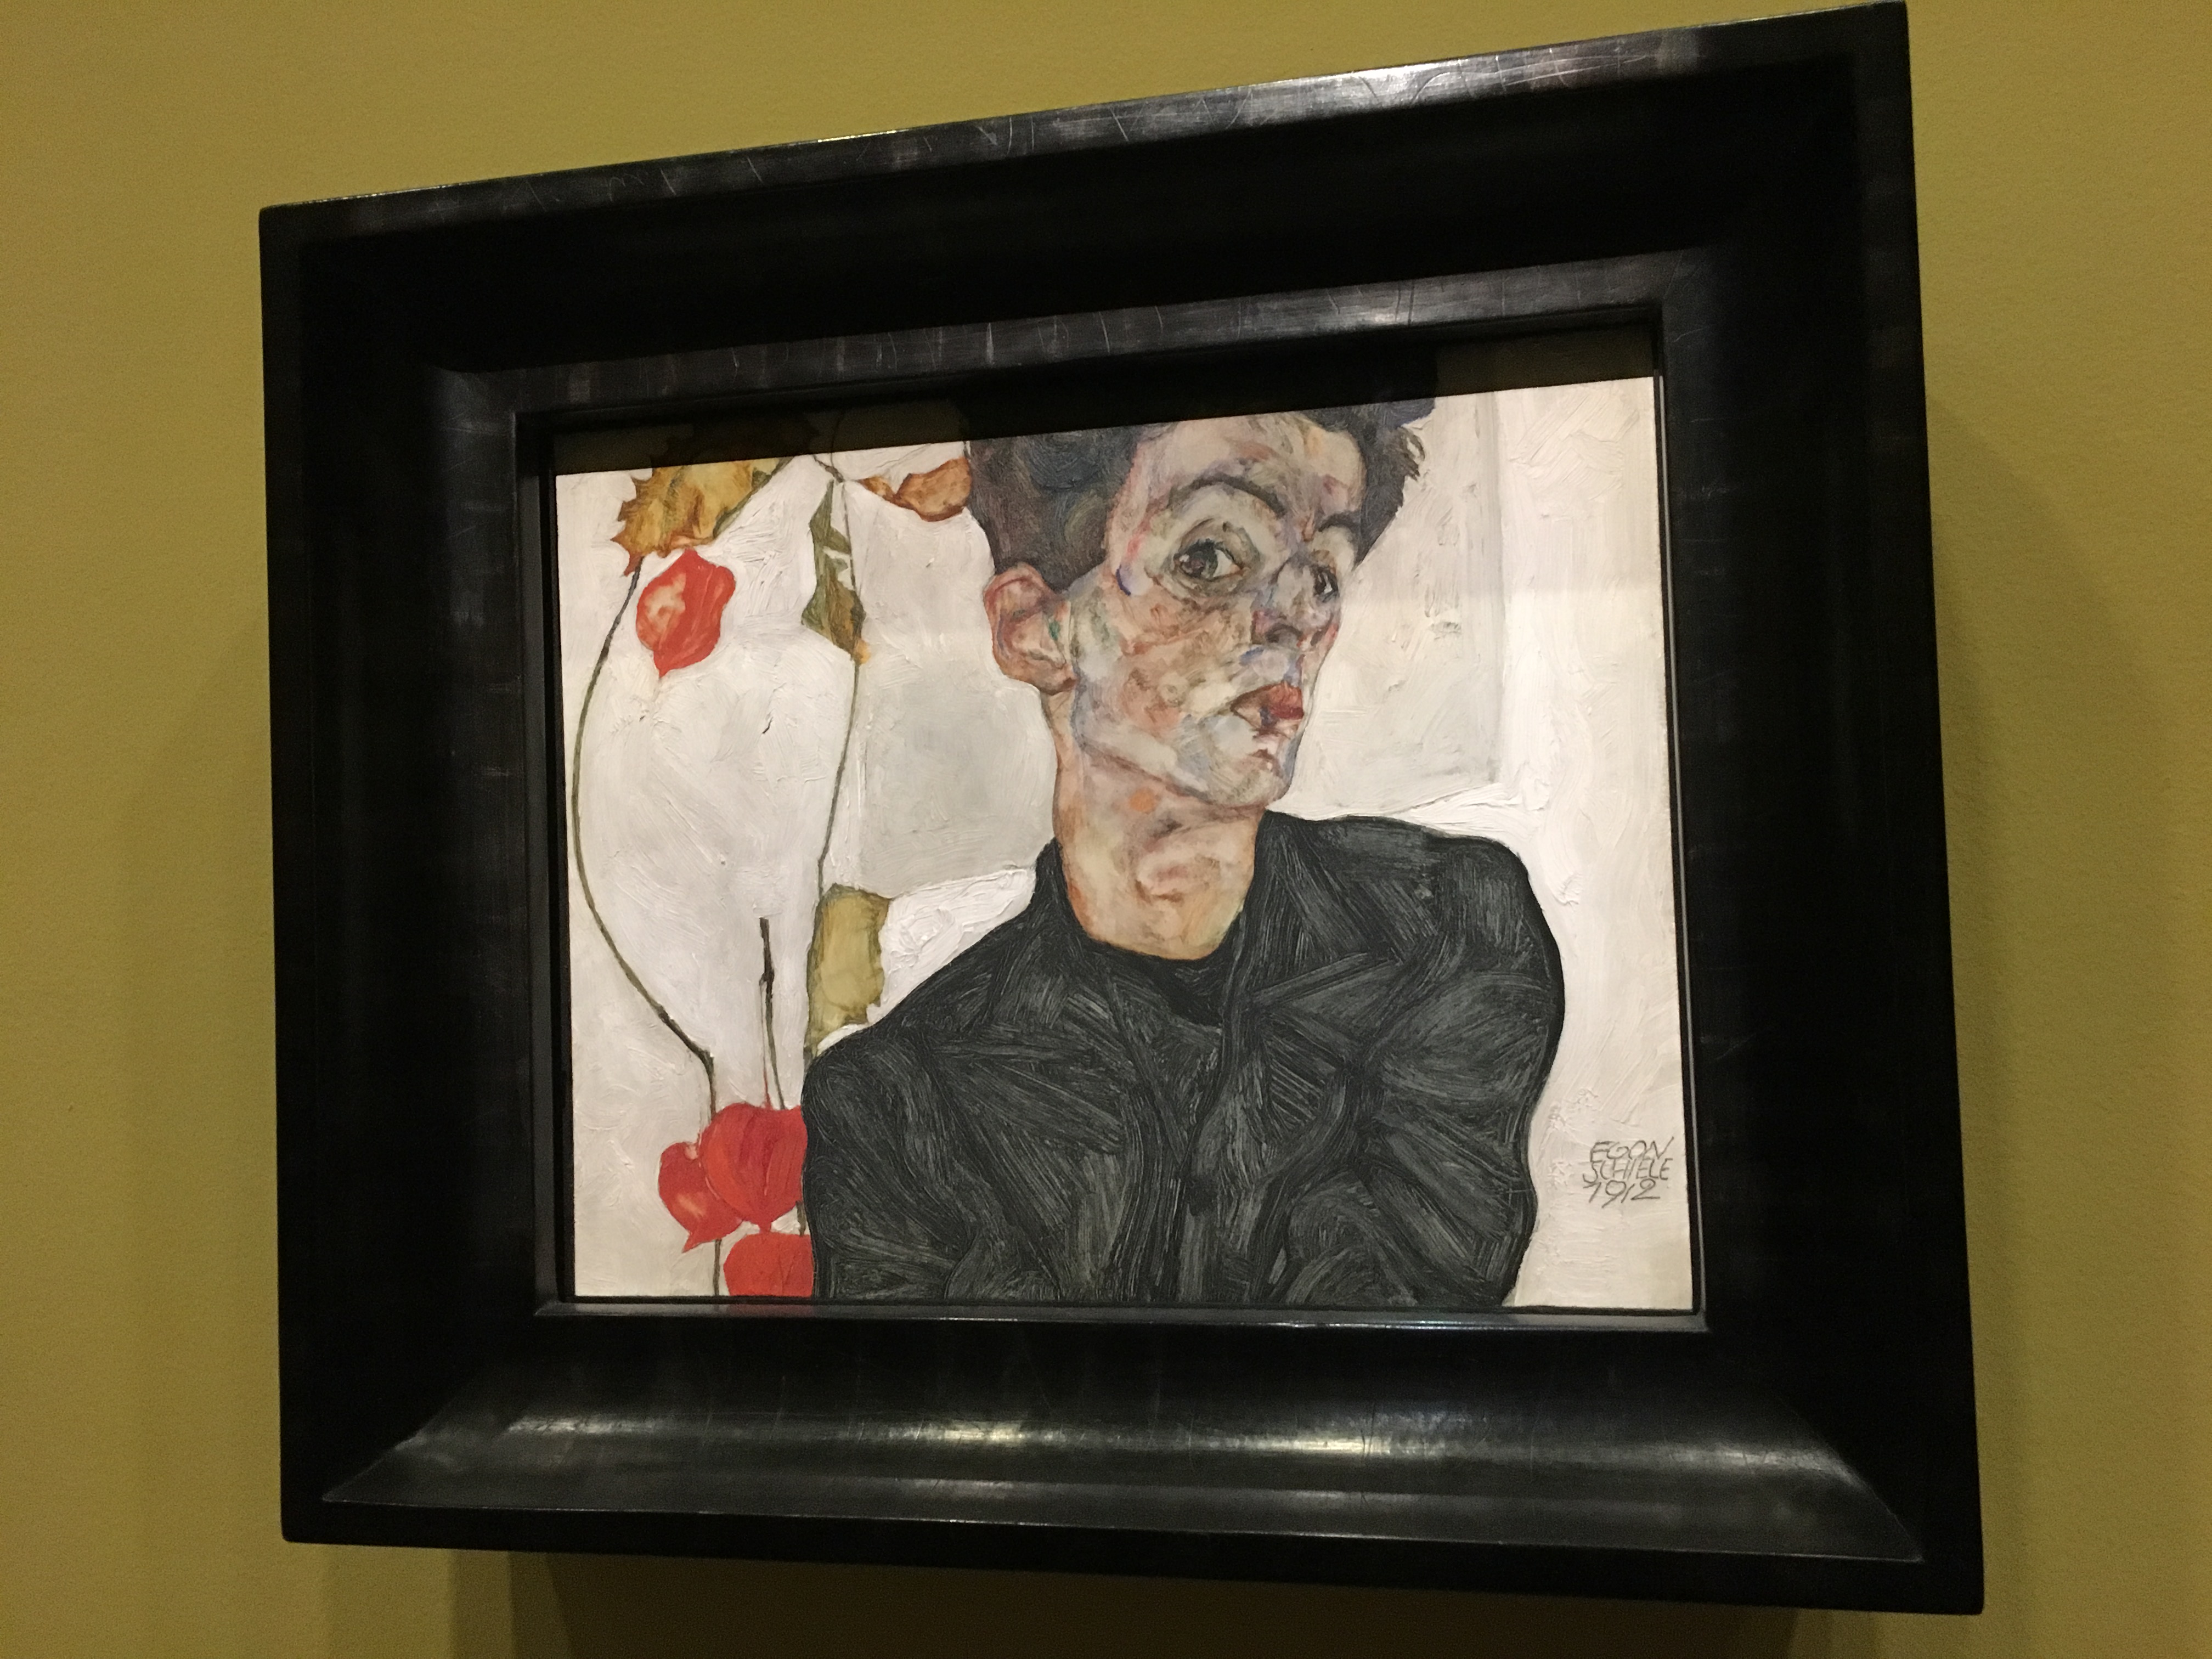 Museum Review: Basquiat and Schiele at Fondation Louis Vuitton